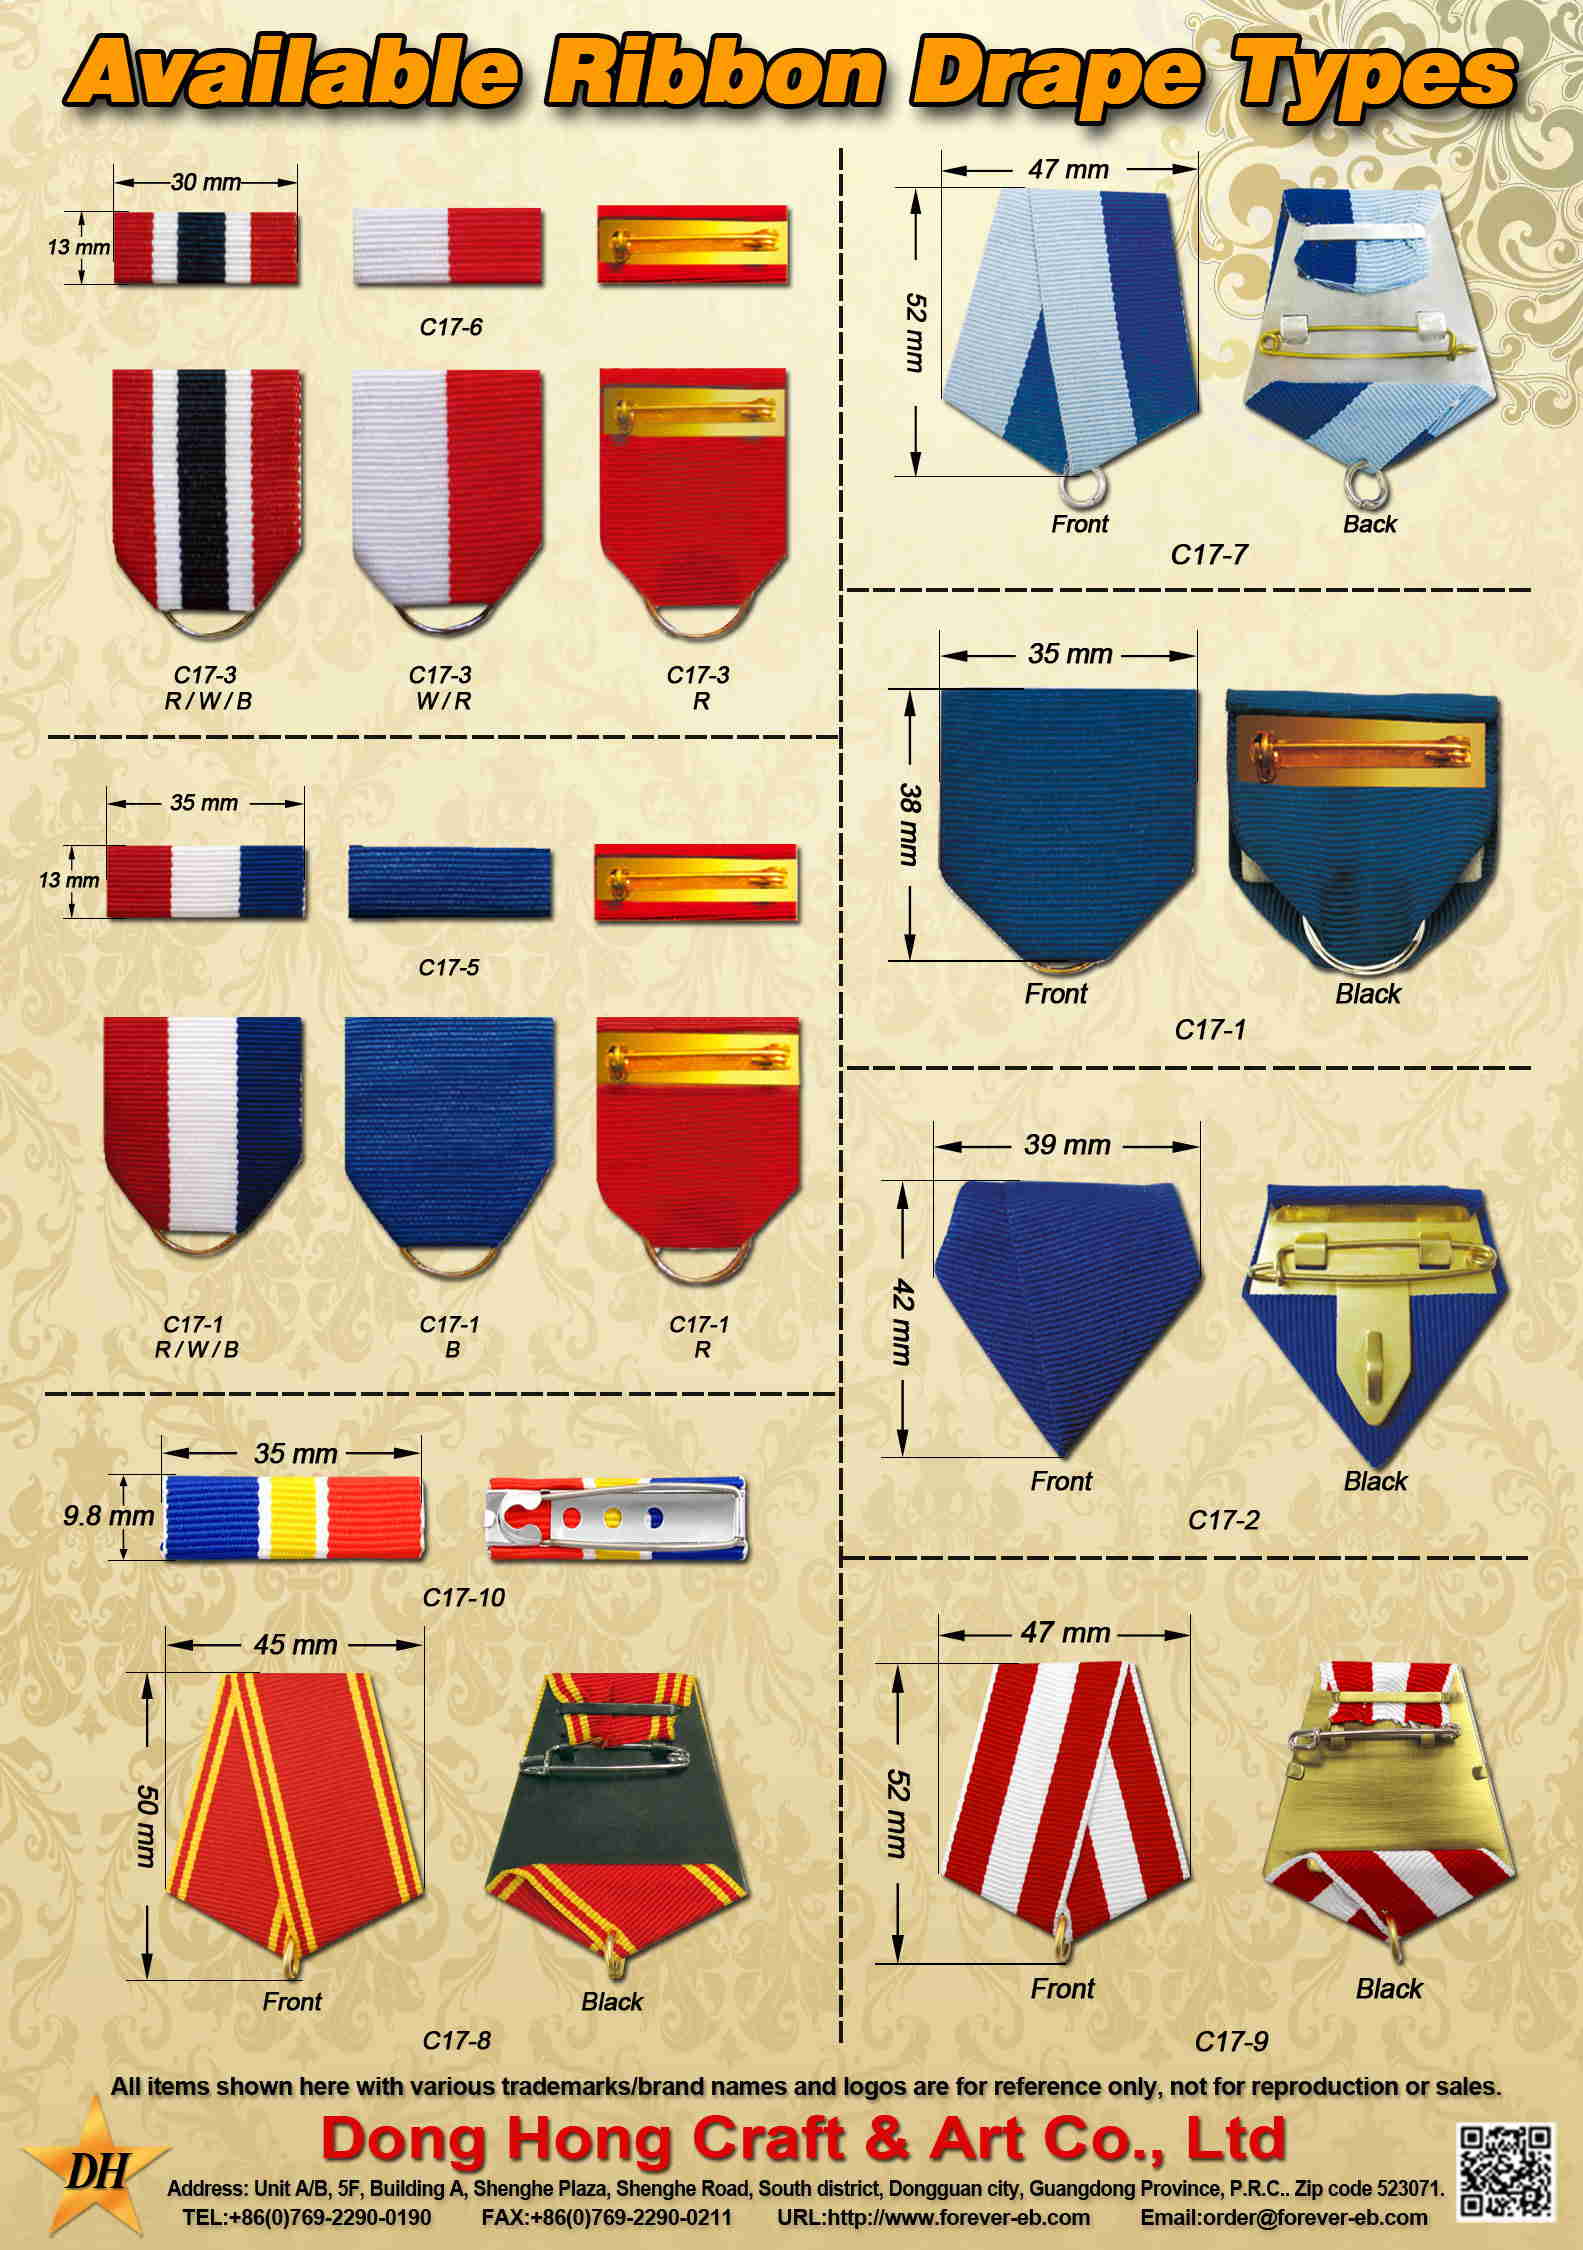 Medal Ribbon Drapes